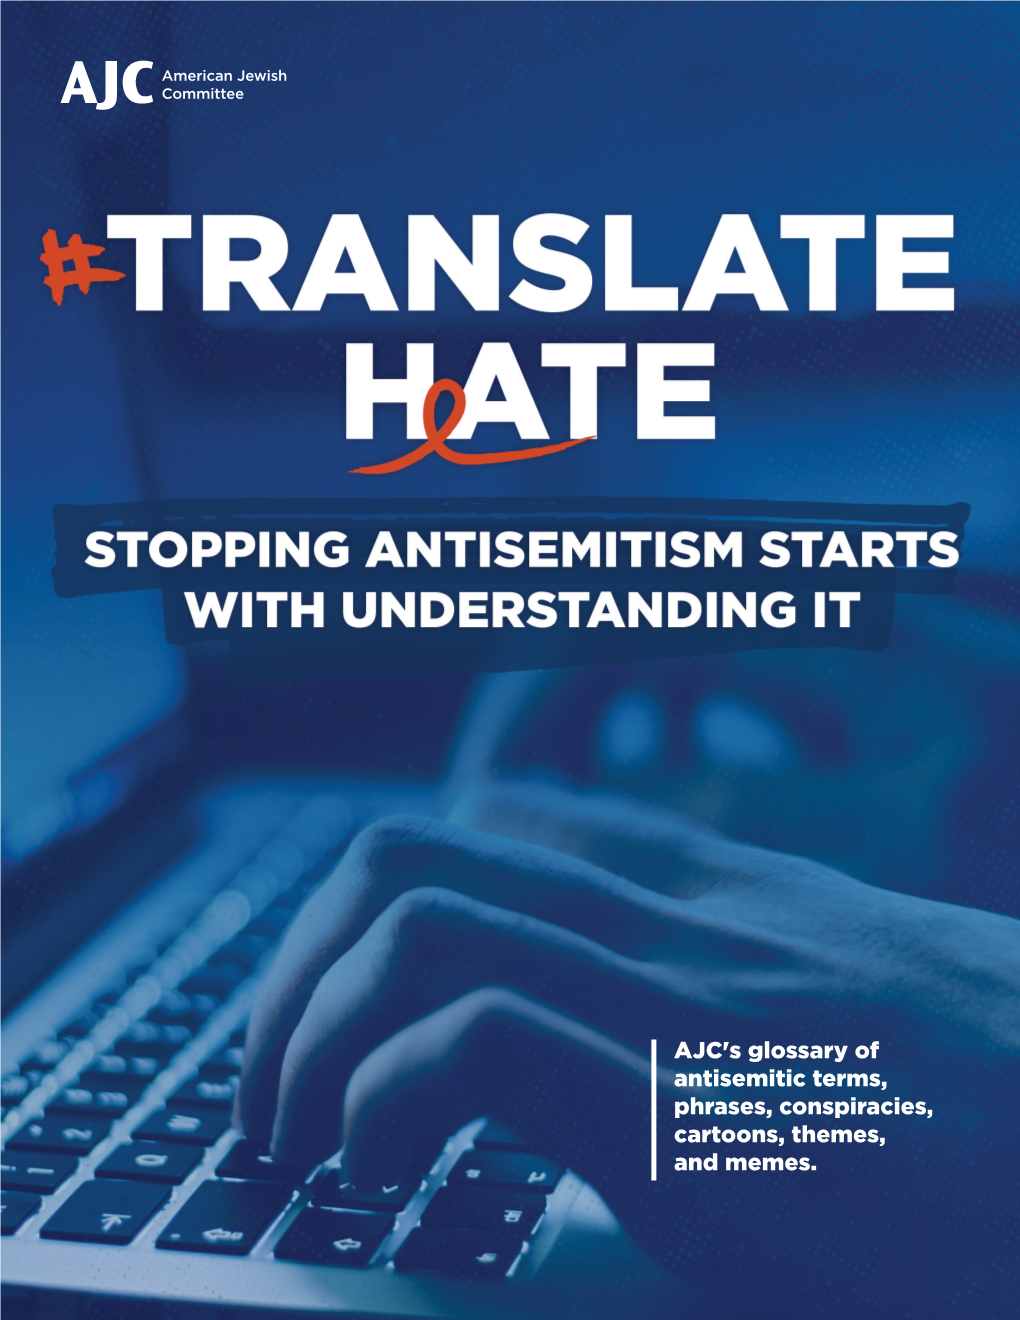 AJC's Translate Hate Glossary